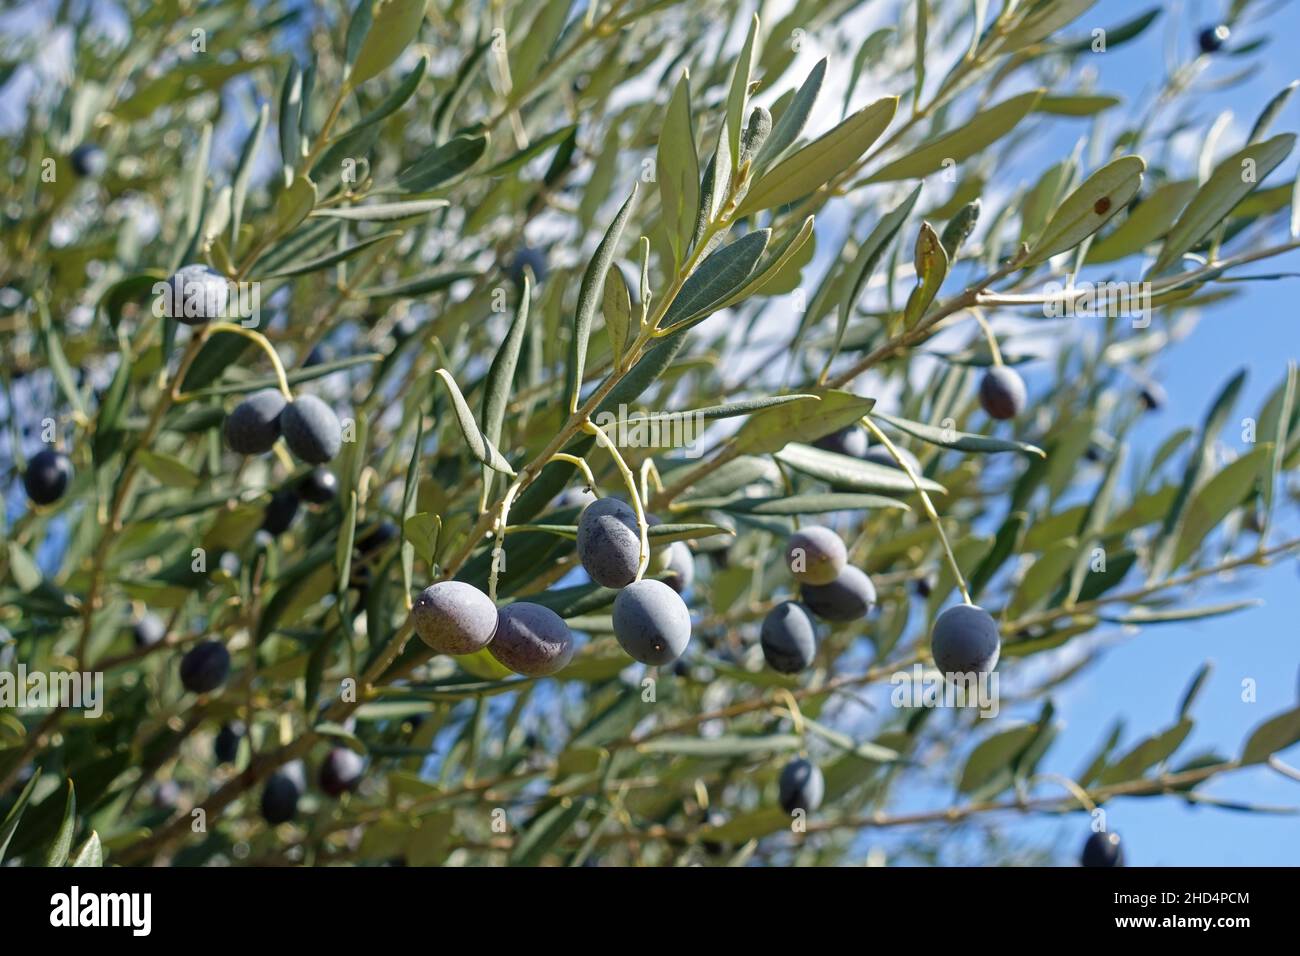 Rama de olivo con aceitunas maduras listas para recoger. Foto de stock